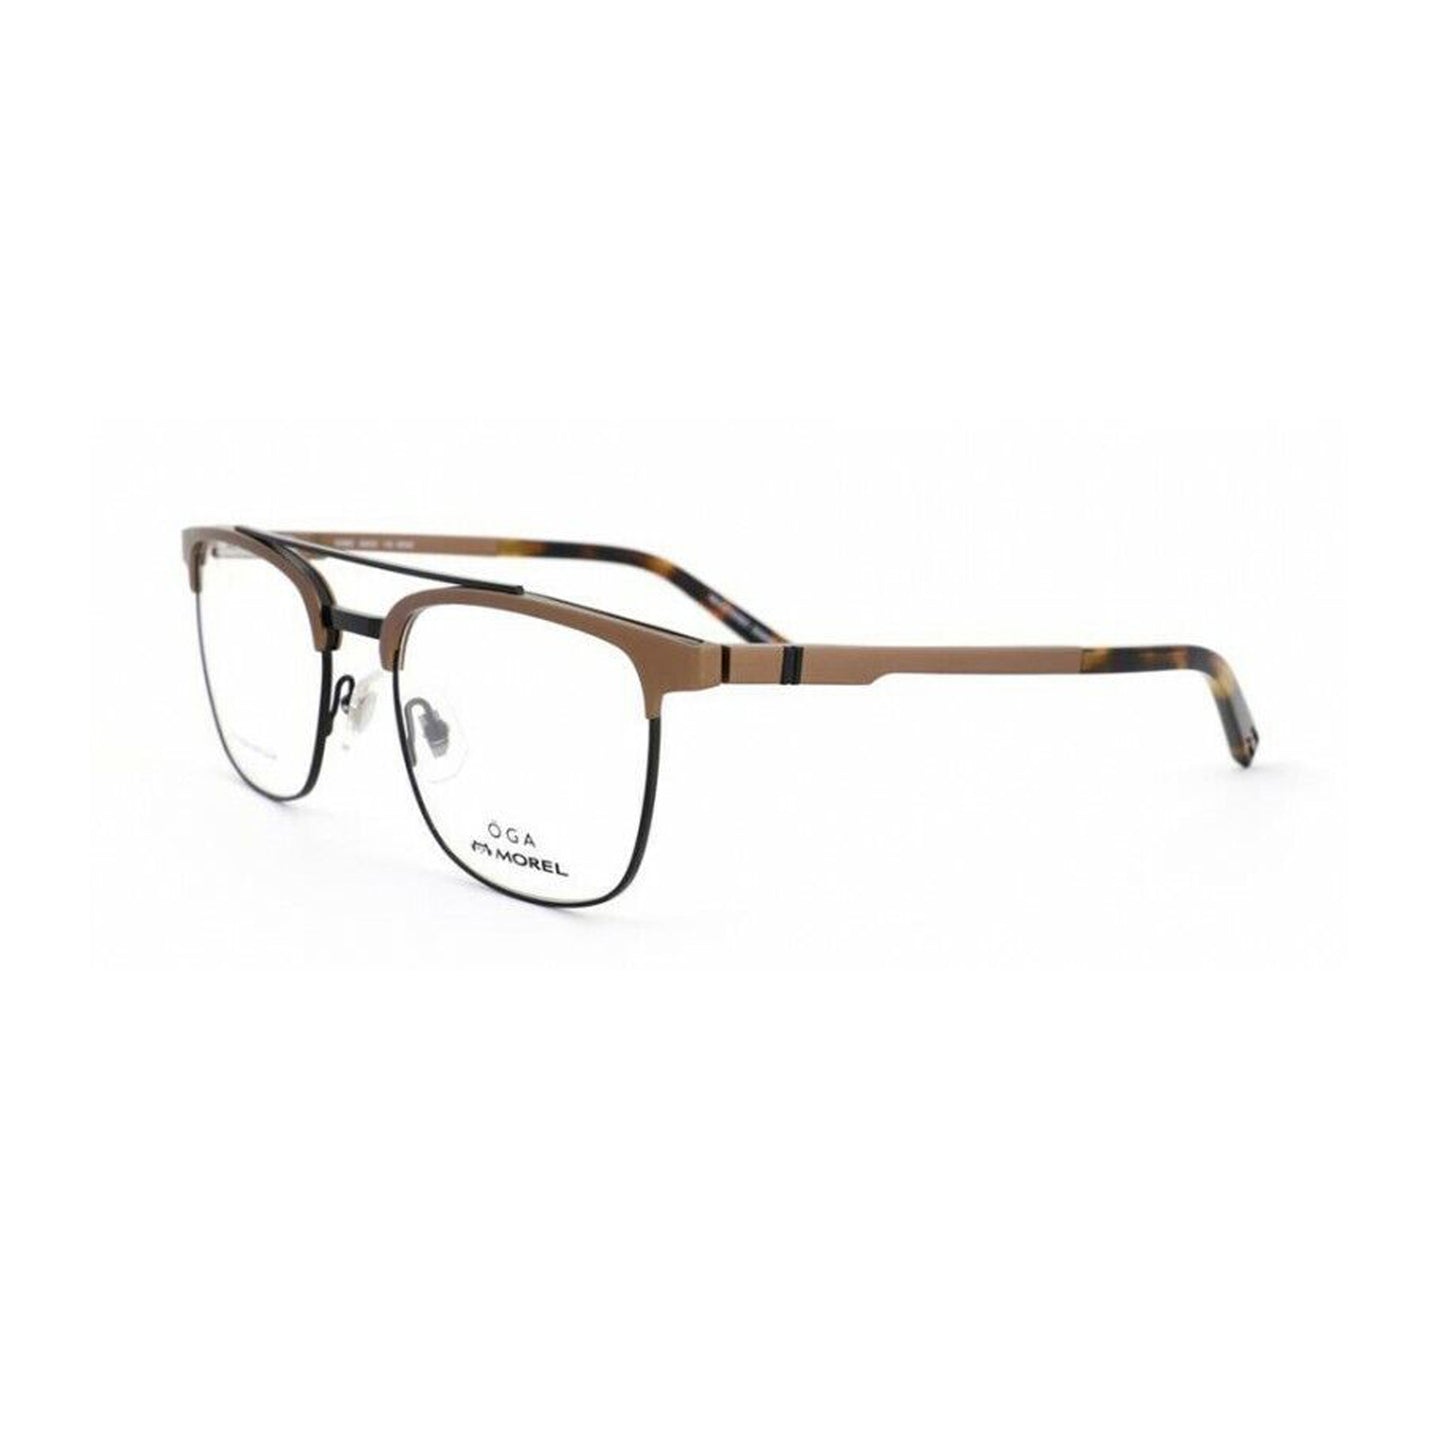 Oga By Morel Black Square Acetate Full Rim Eyeglasses. Made in France. 100920-Y22 MN06